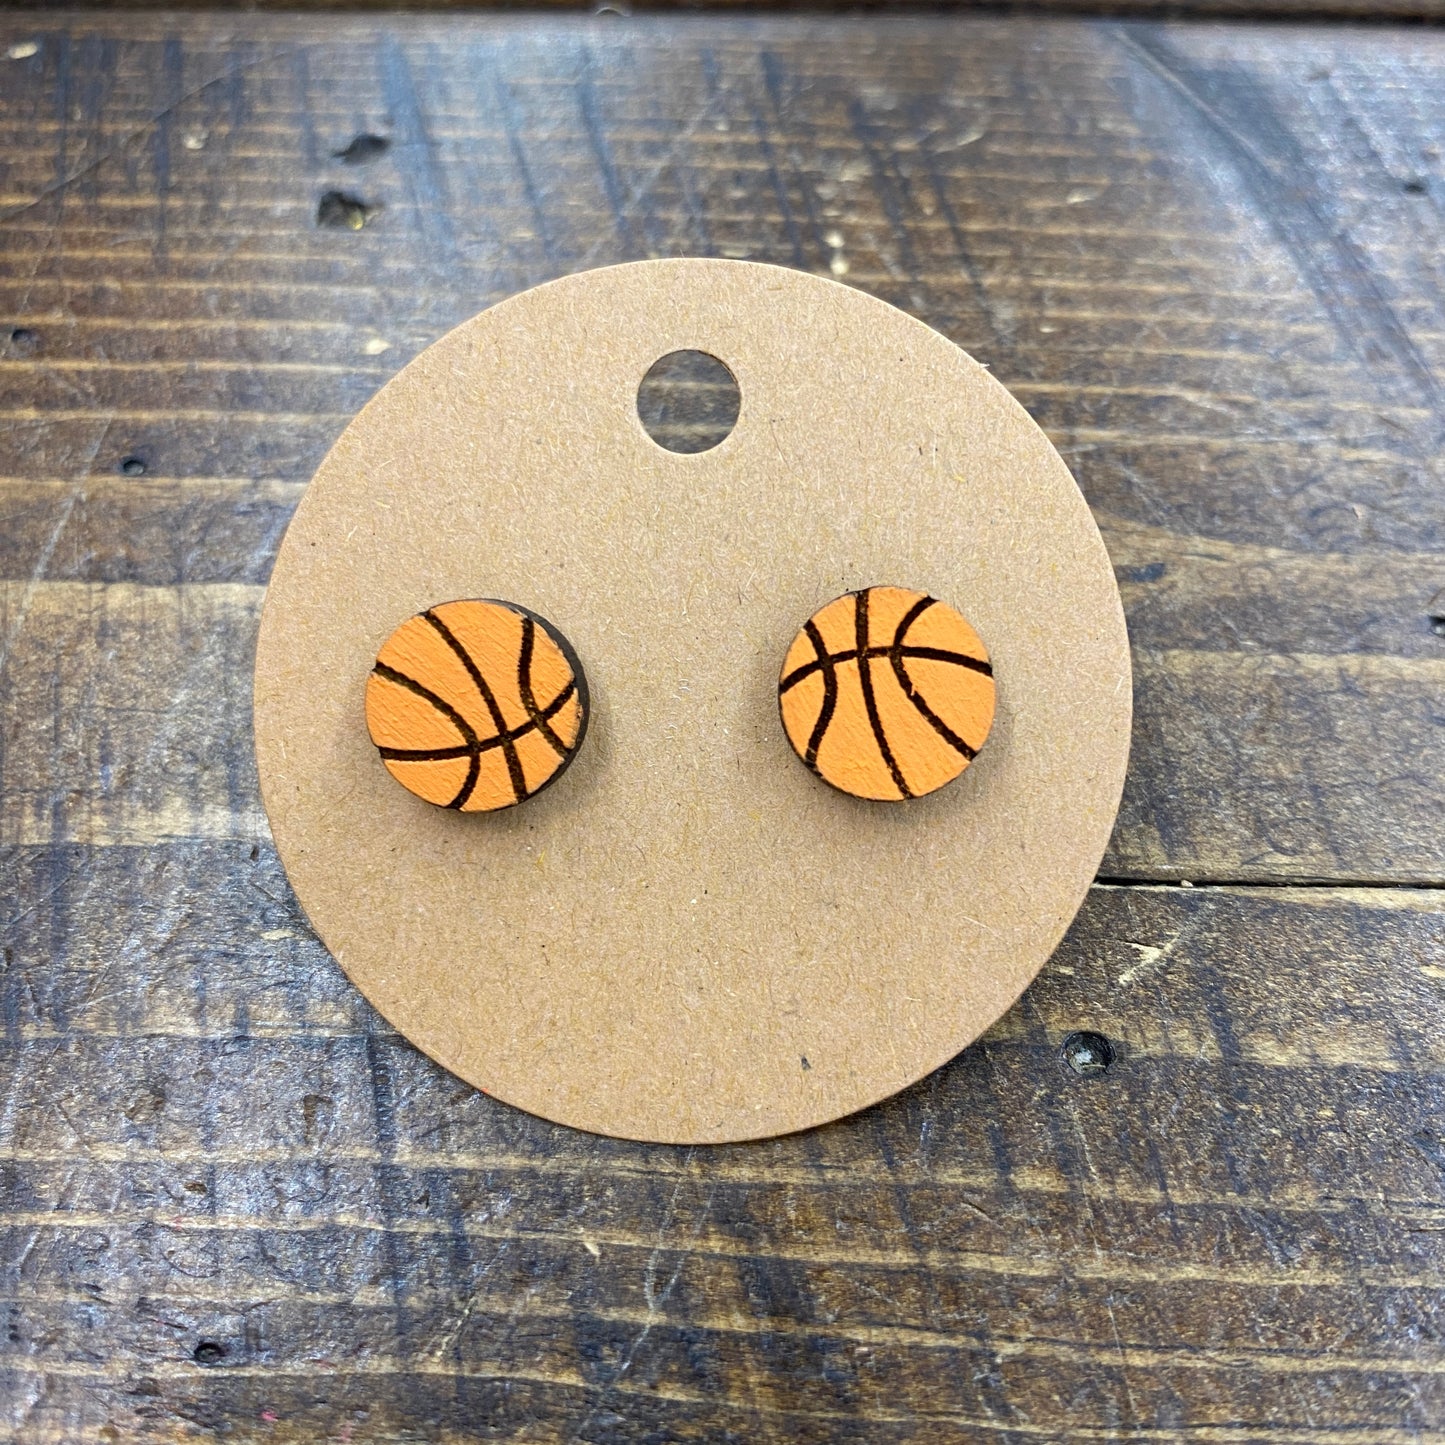 Wood Stud Earrings